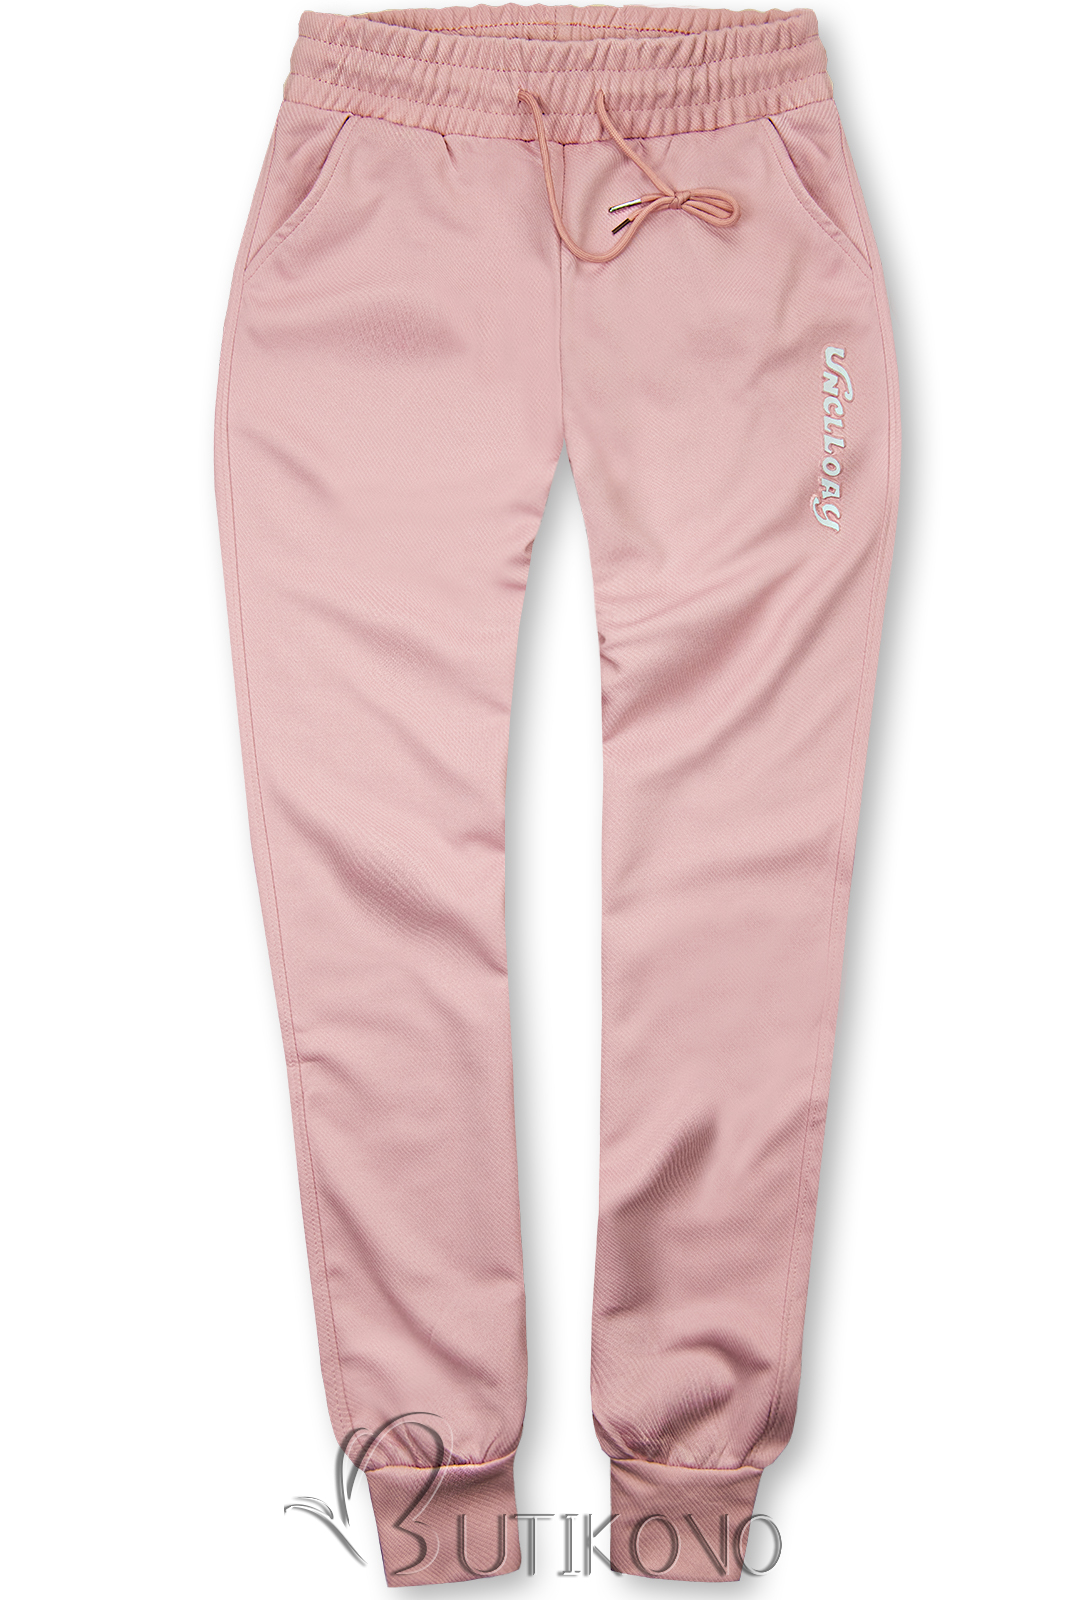 Ružové športové nohavice